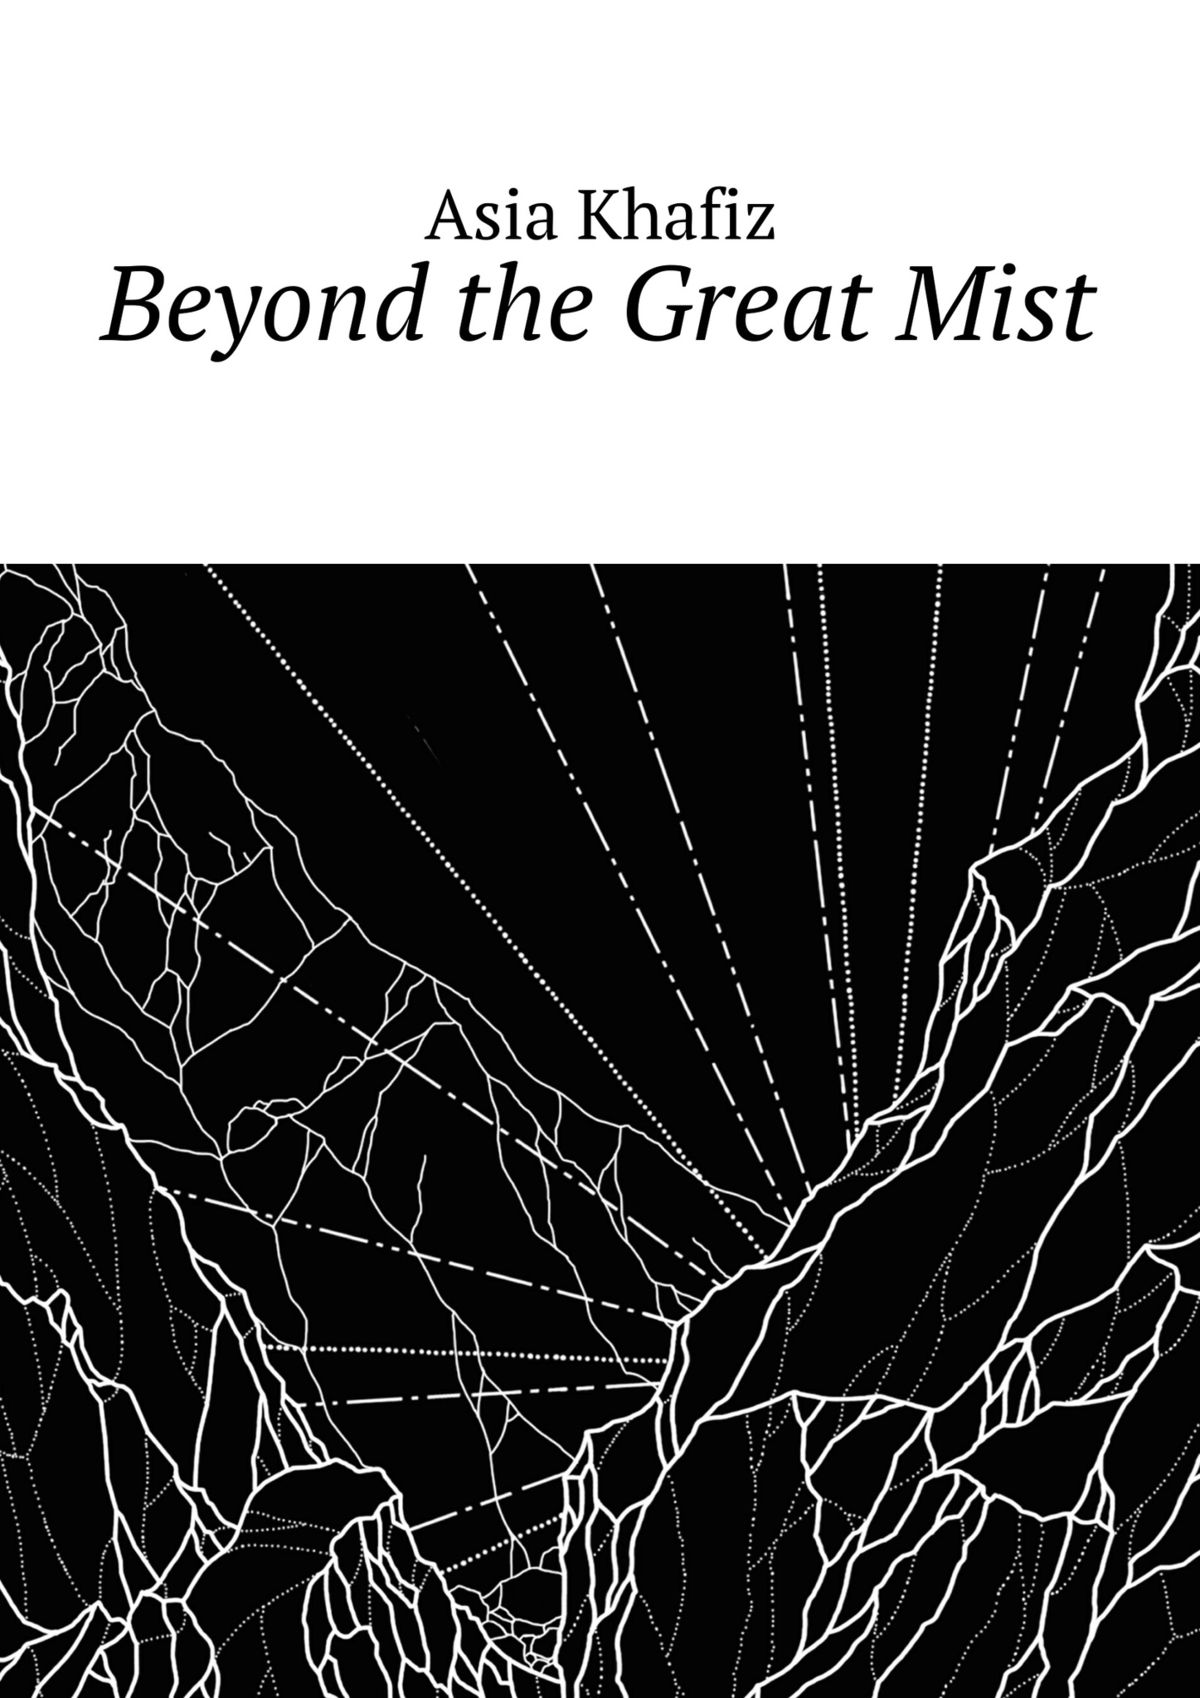 Книга Beyond the Great Mist из серии , созданная Asia Khafiz, может относится к жанру Боевое фэнтези, Любовное фэнтези, Иностранные языки. Стоимость электронной книги Beyond the Great Mist с идентификатором 12261157 составляет 200.00 руб.